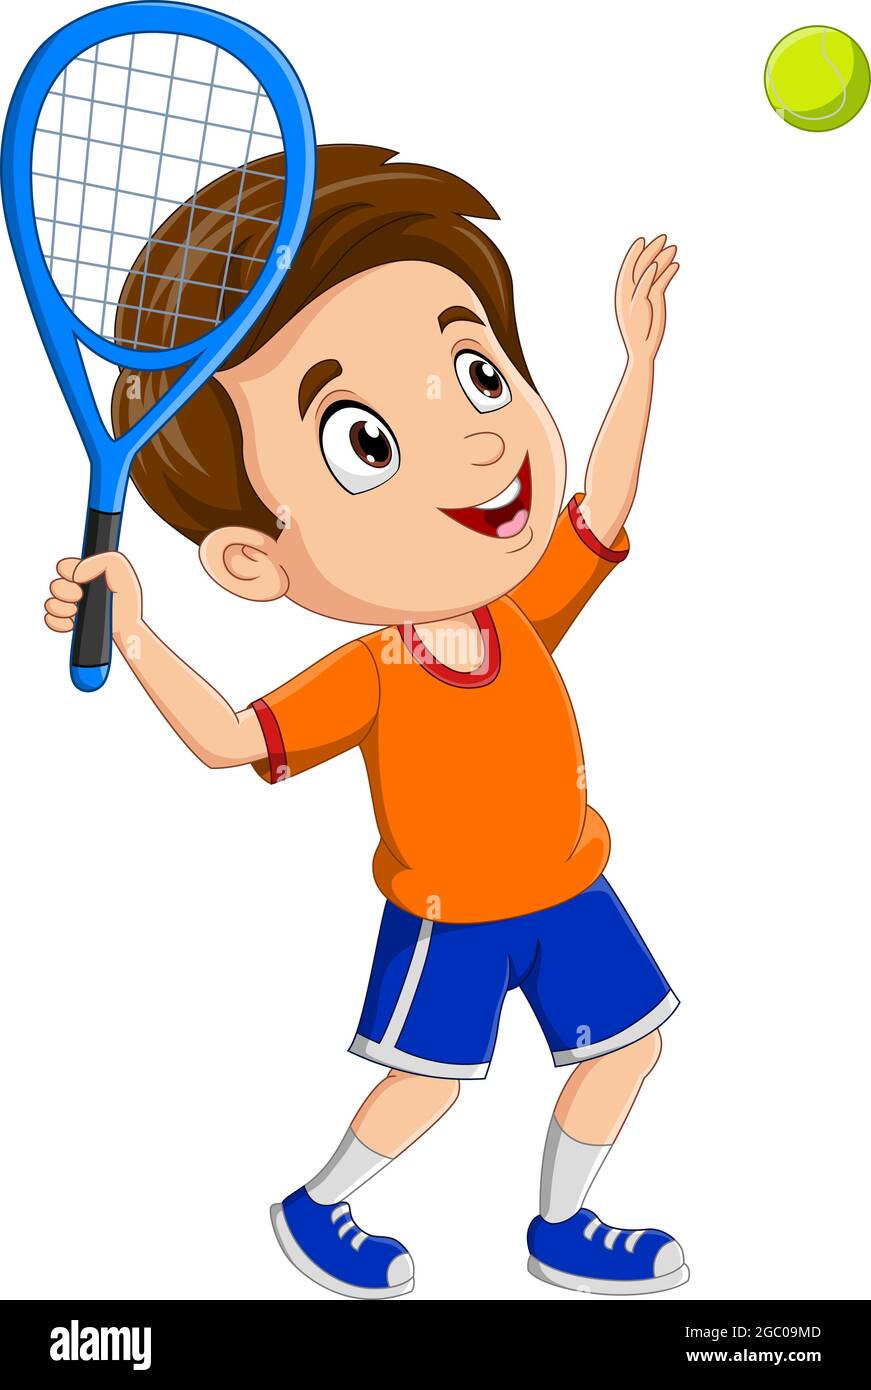 Cartoon kleiner Junge spielt Tennis Stock-Vektorgrafik - Alamy